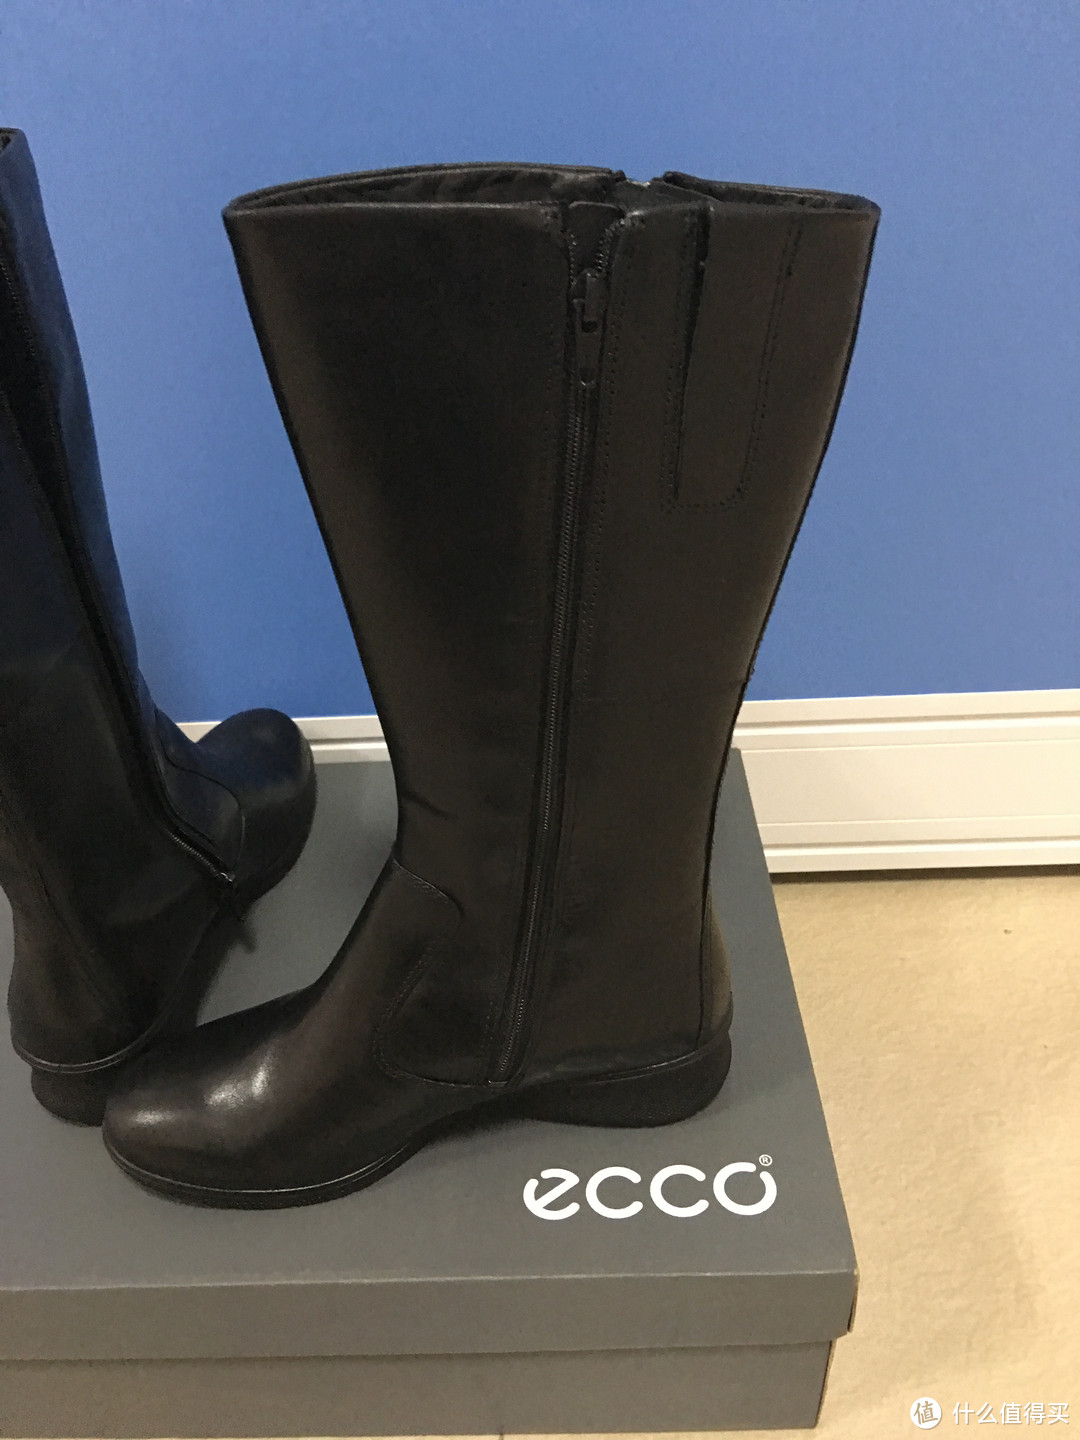 #有货自远方来#ECCO 芭贝特坡跟系列GORE-TEX长靴